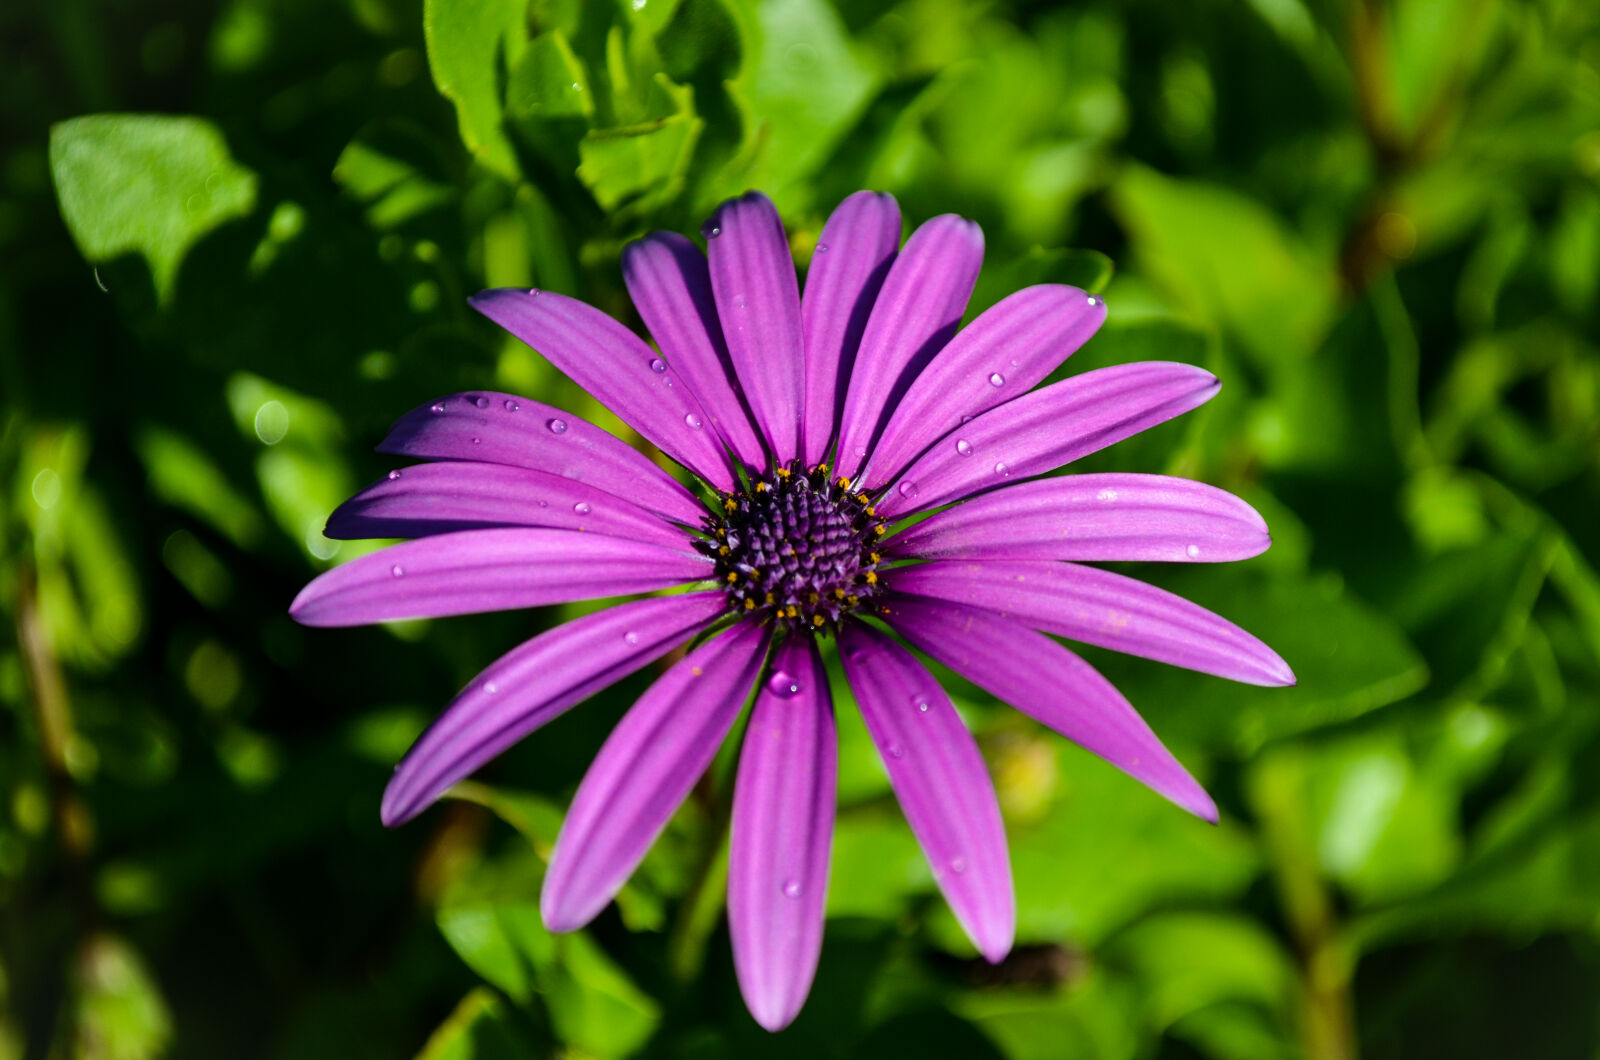 Nikon D5100 + Nikon AF-S DX Nikkor 18-55mm F3.5-5.6G VR sample photo. Purple flower in garden photography